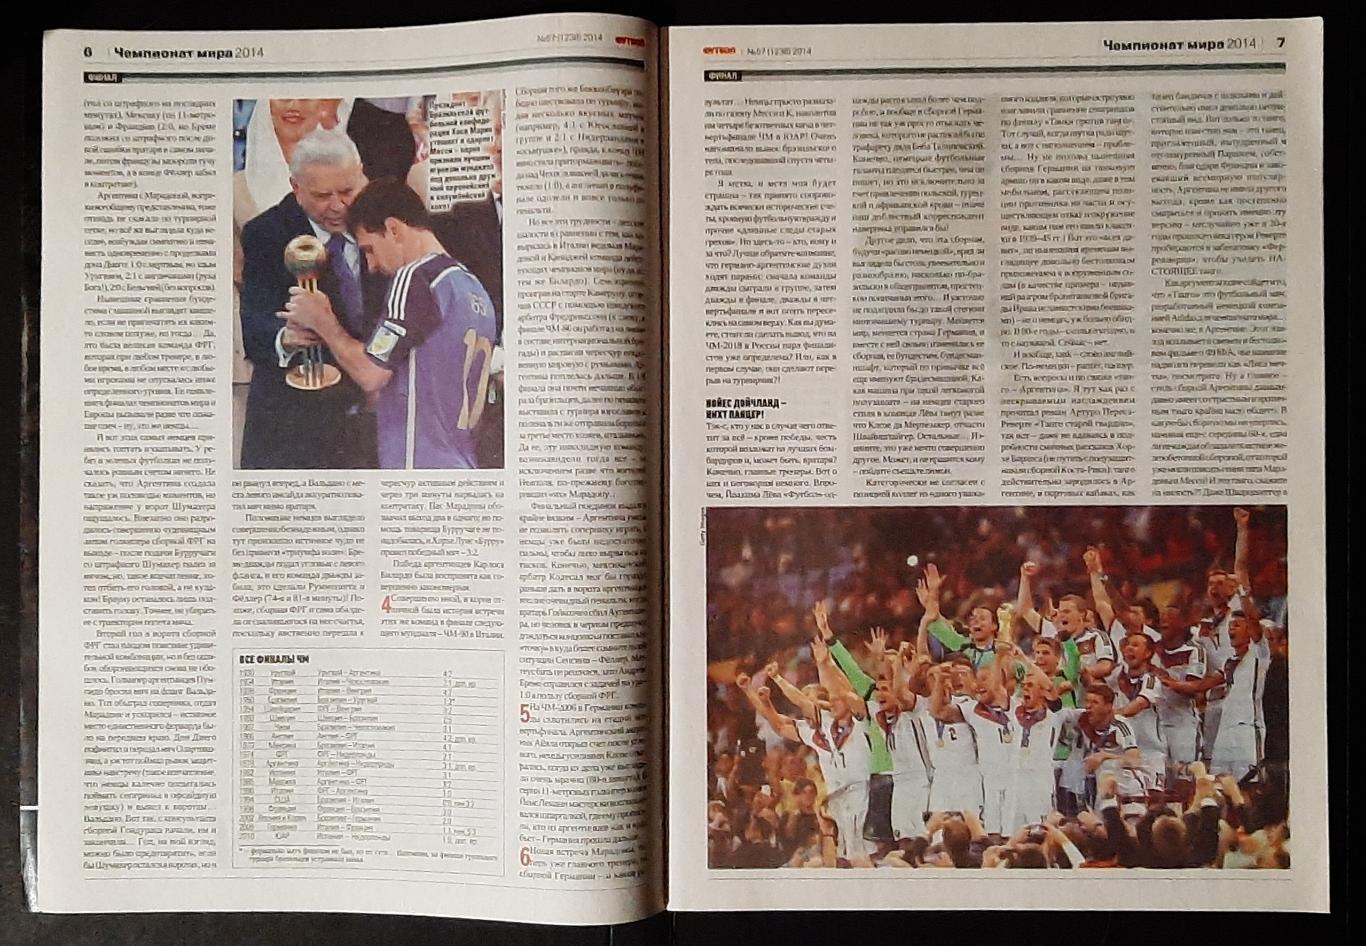 Журнал Футбол #57 2014 Фінал Чемпіонату світу. 2